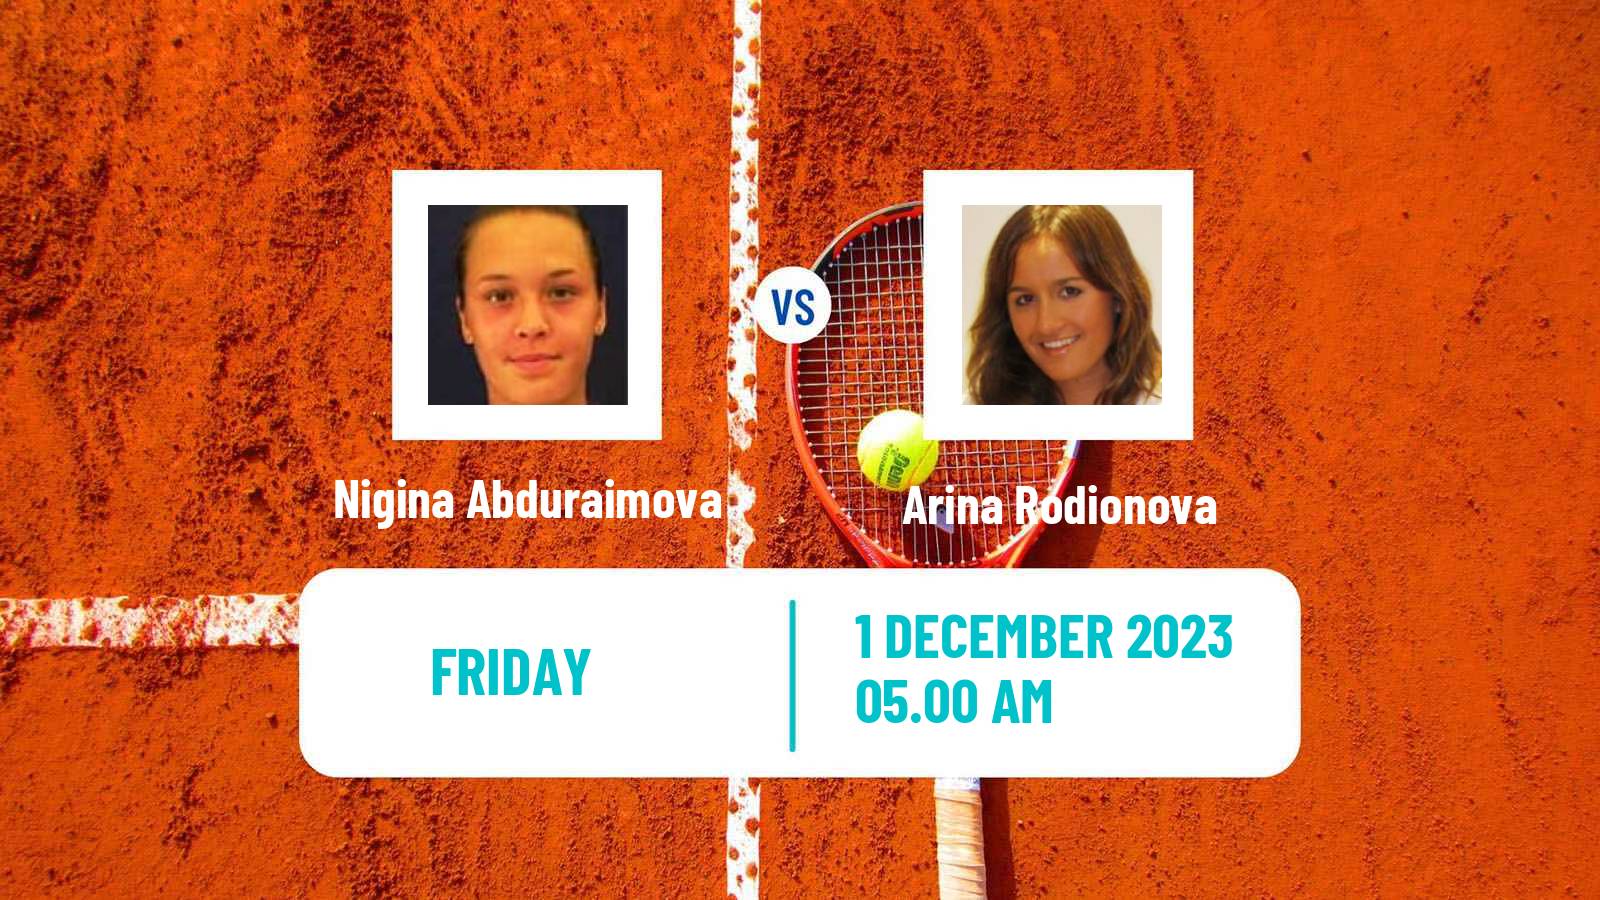 Tennis ITF W60 Trnava 3 Women Nigina Abduraimova - Arina Rodionova